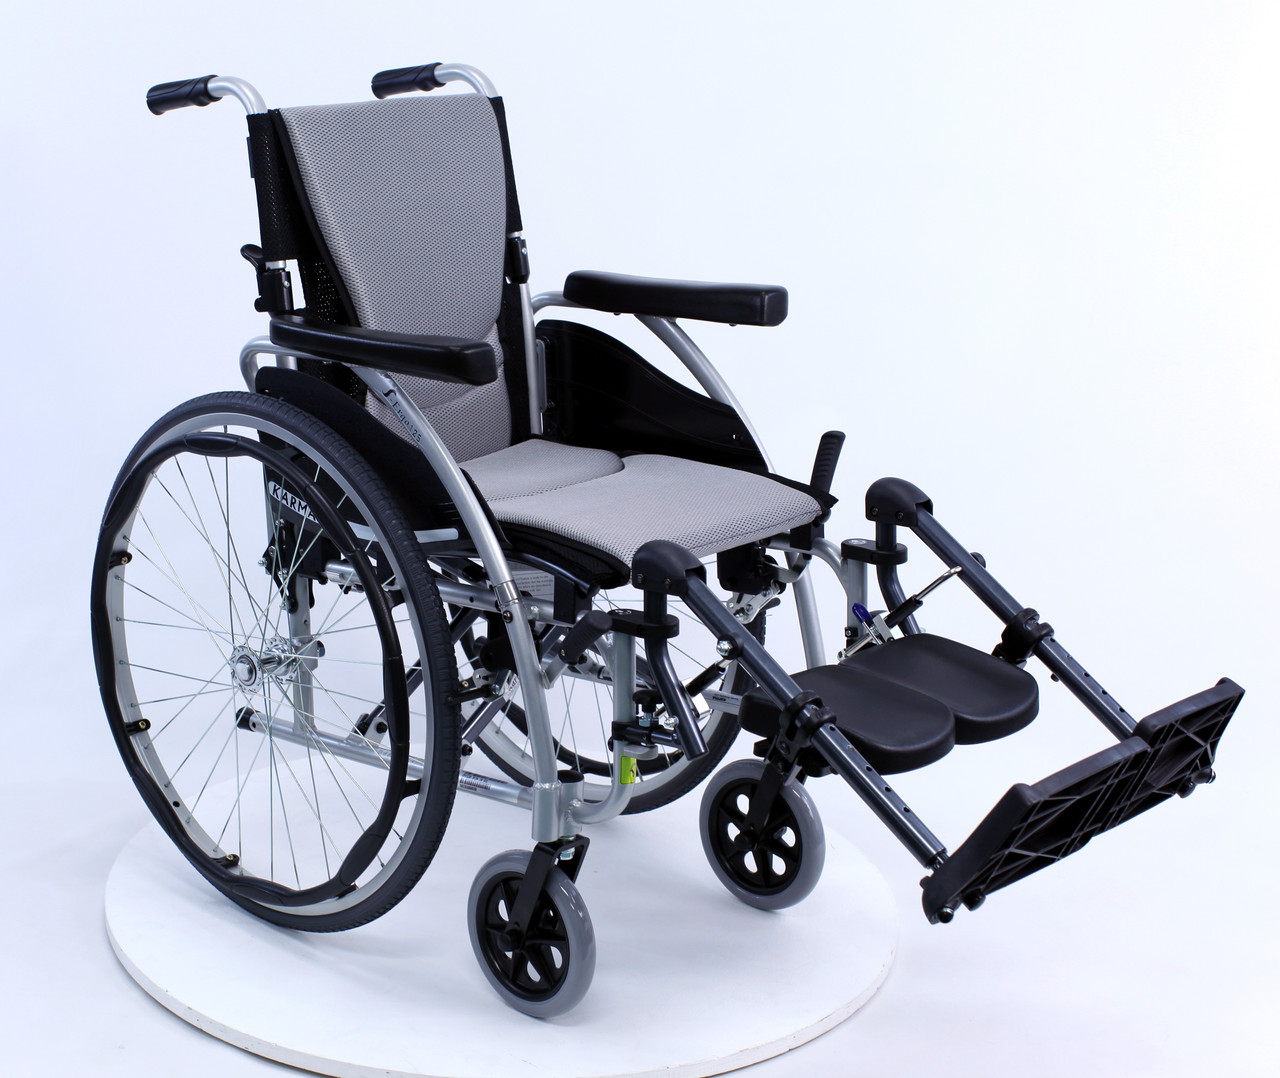 S-ERGO 125 Lightweight Wheelchair by Karman